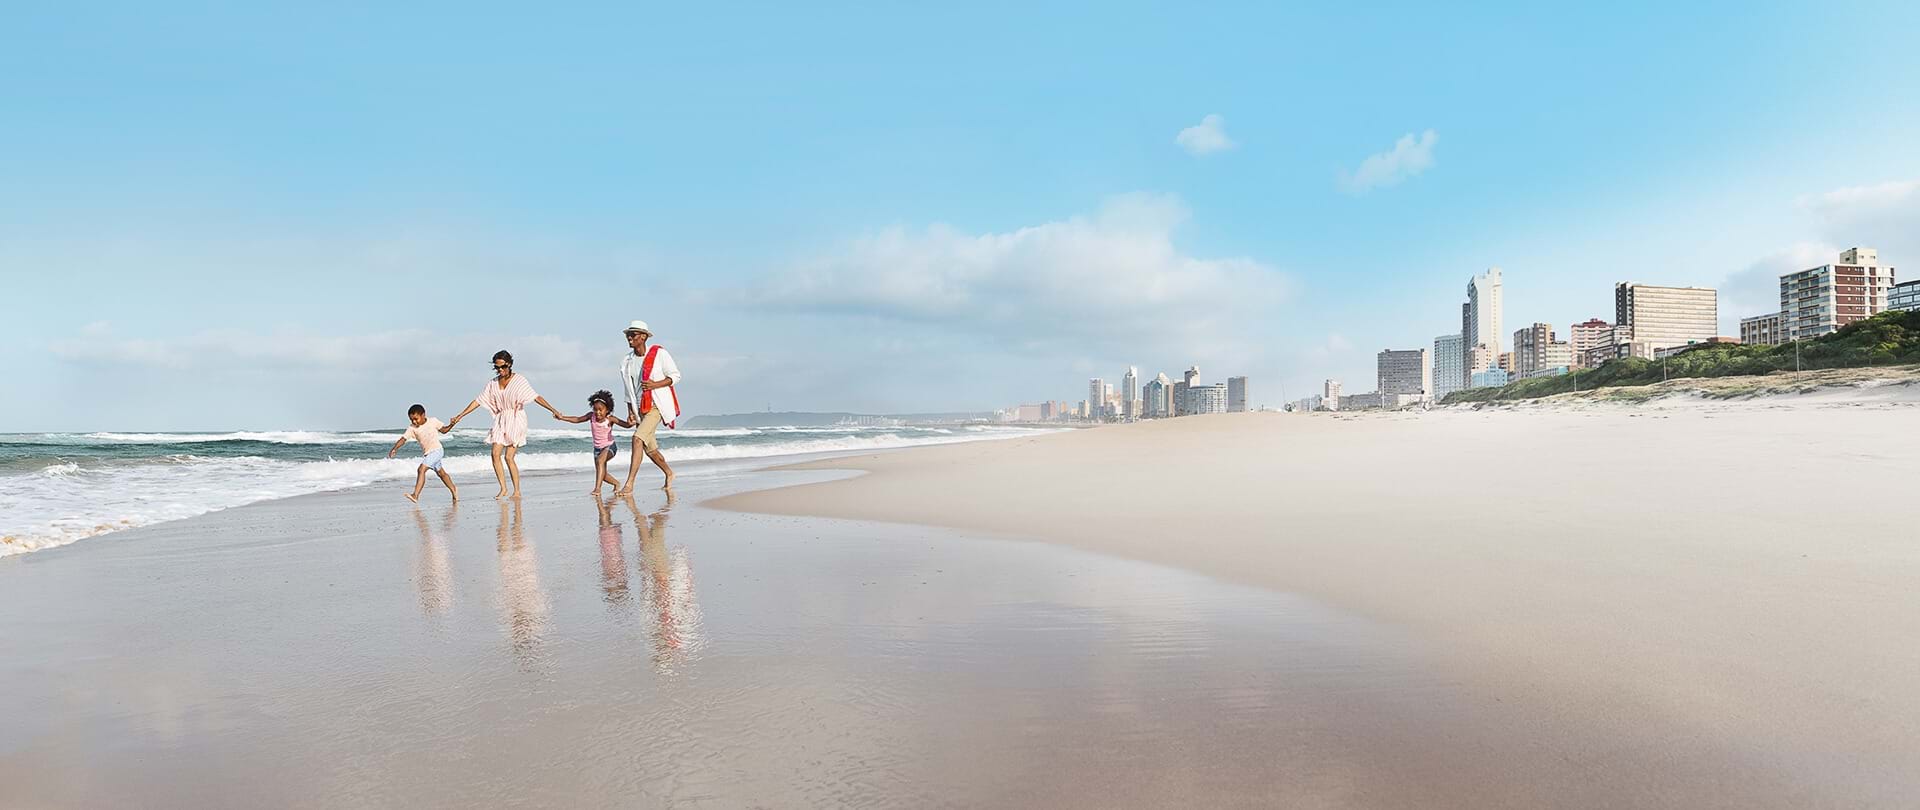 Durban Beaches - South Africa